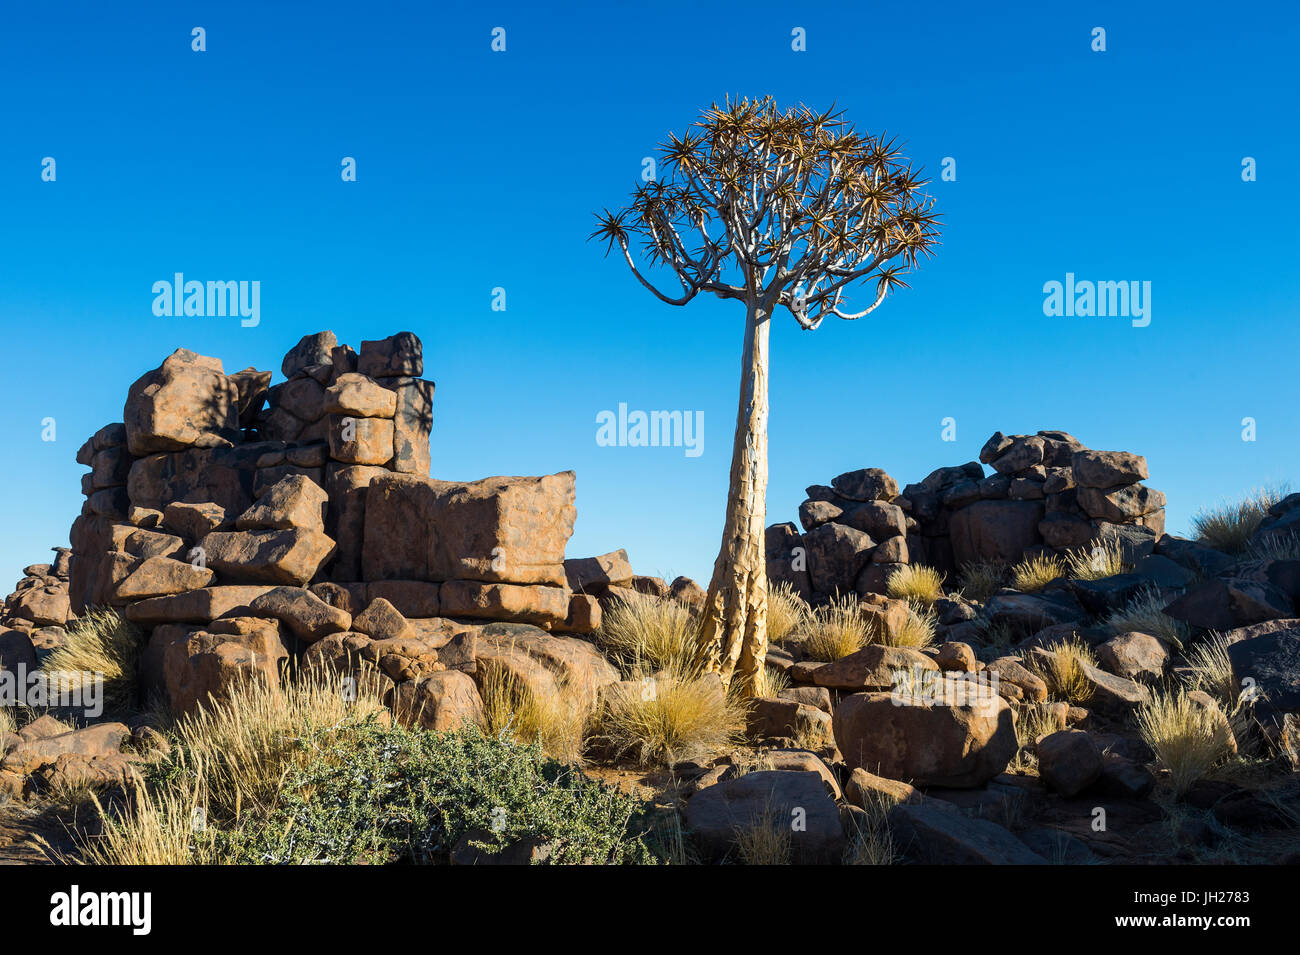 Inusuales formaciones rocosas gigantes, Playground, Keetmanshoop, Namibia, África Foto de stock